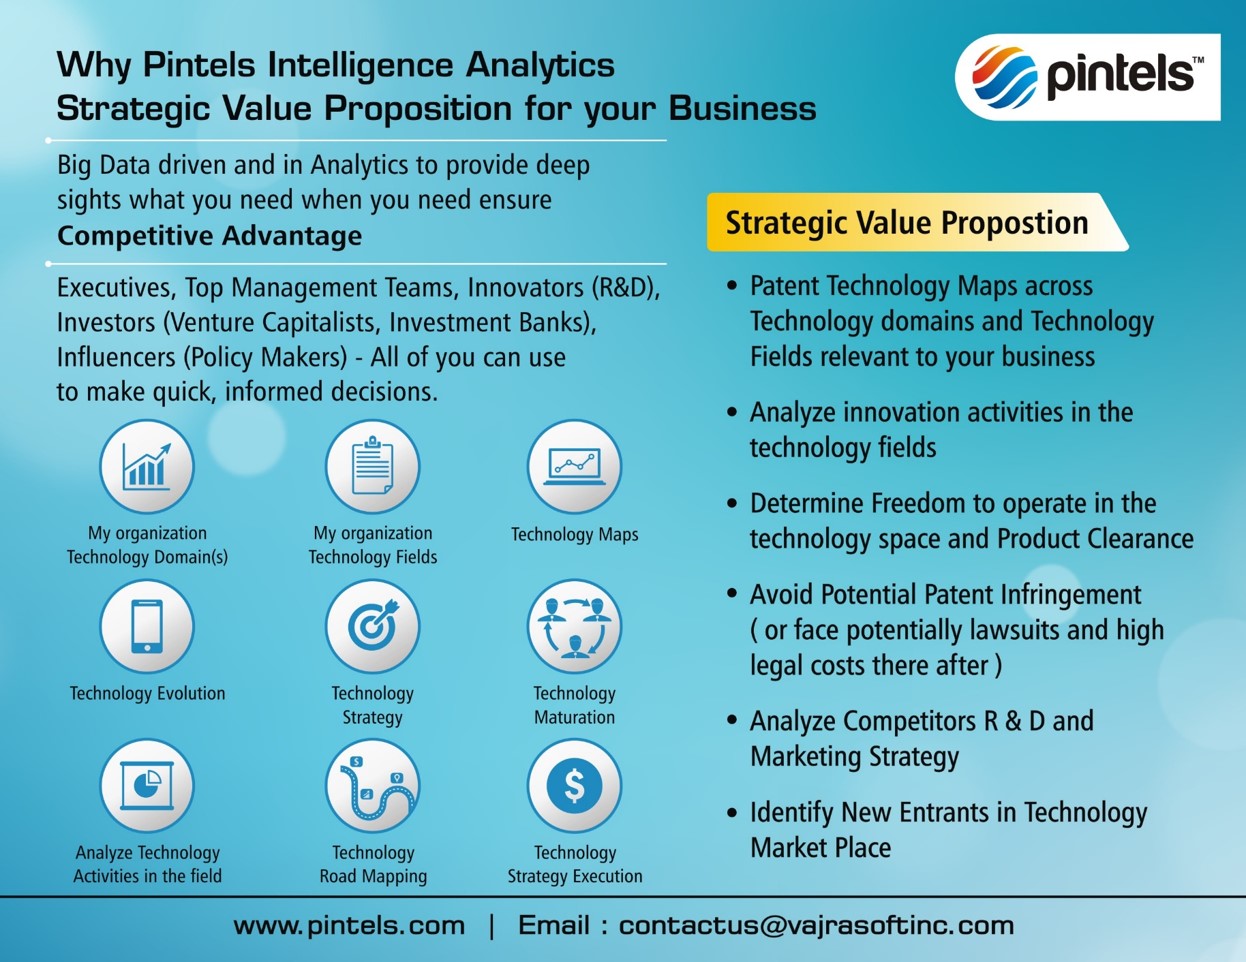 Pintels Patent Intelligence Analytics